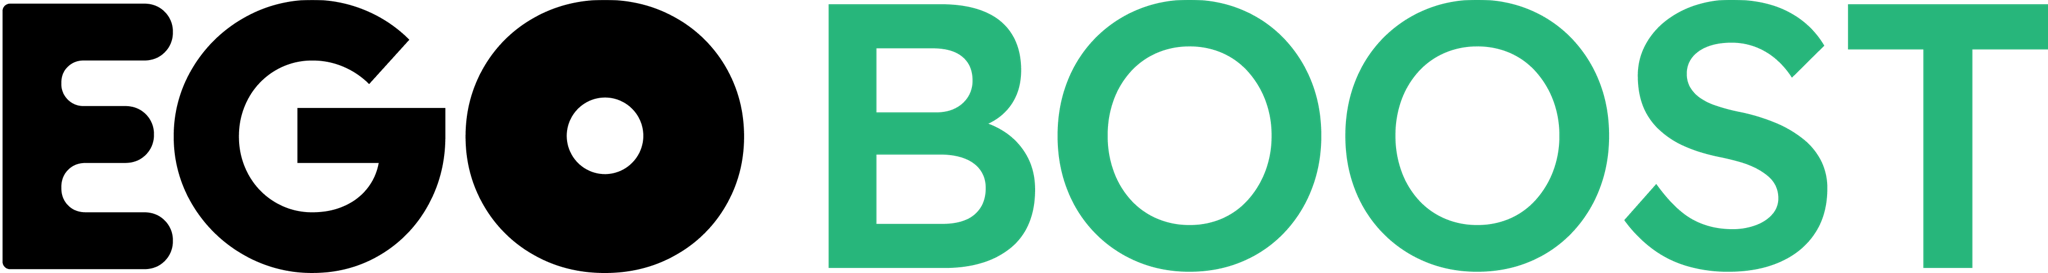 Ensemble Logo